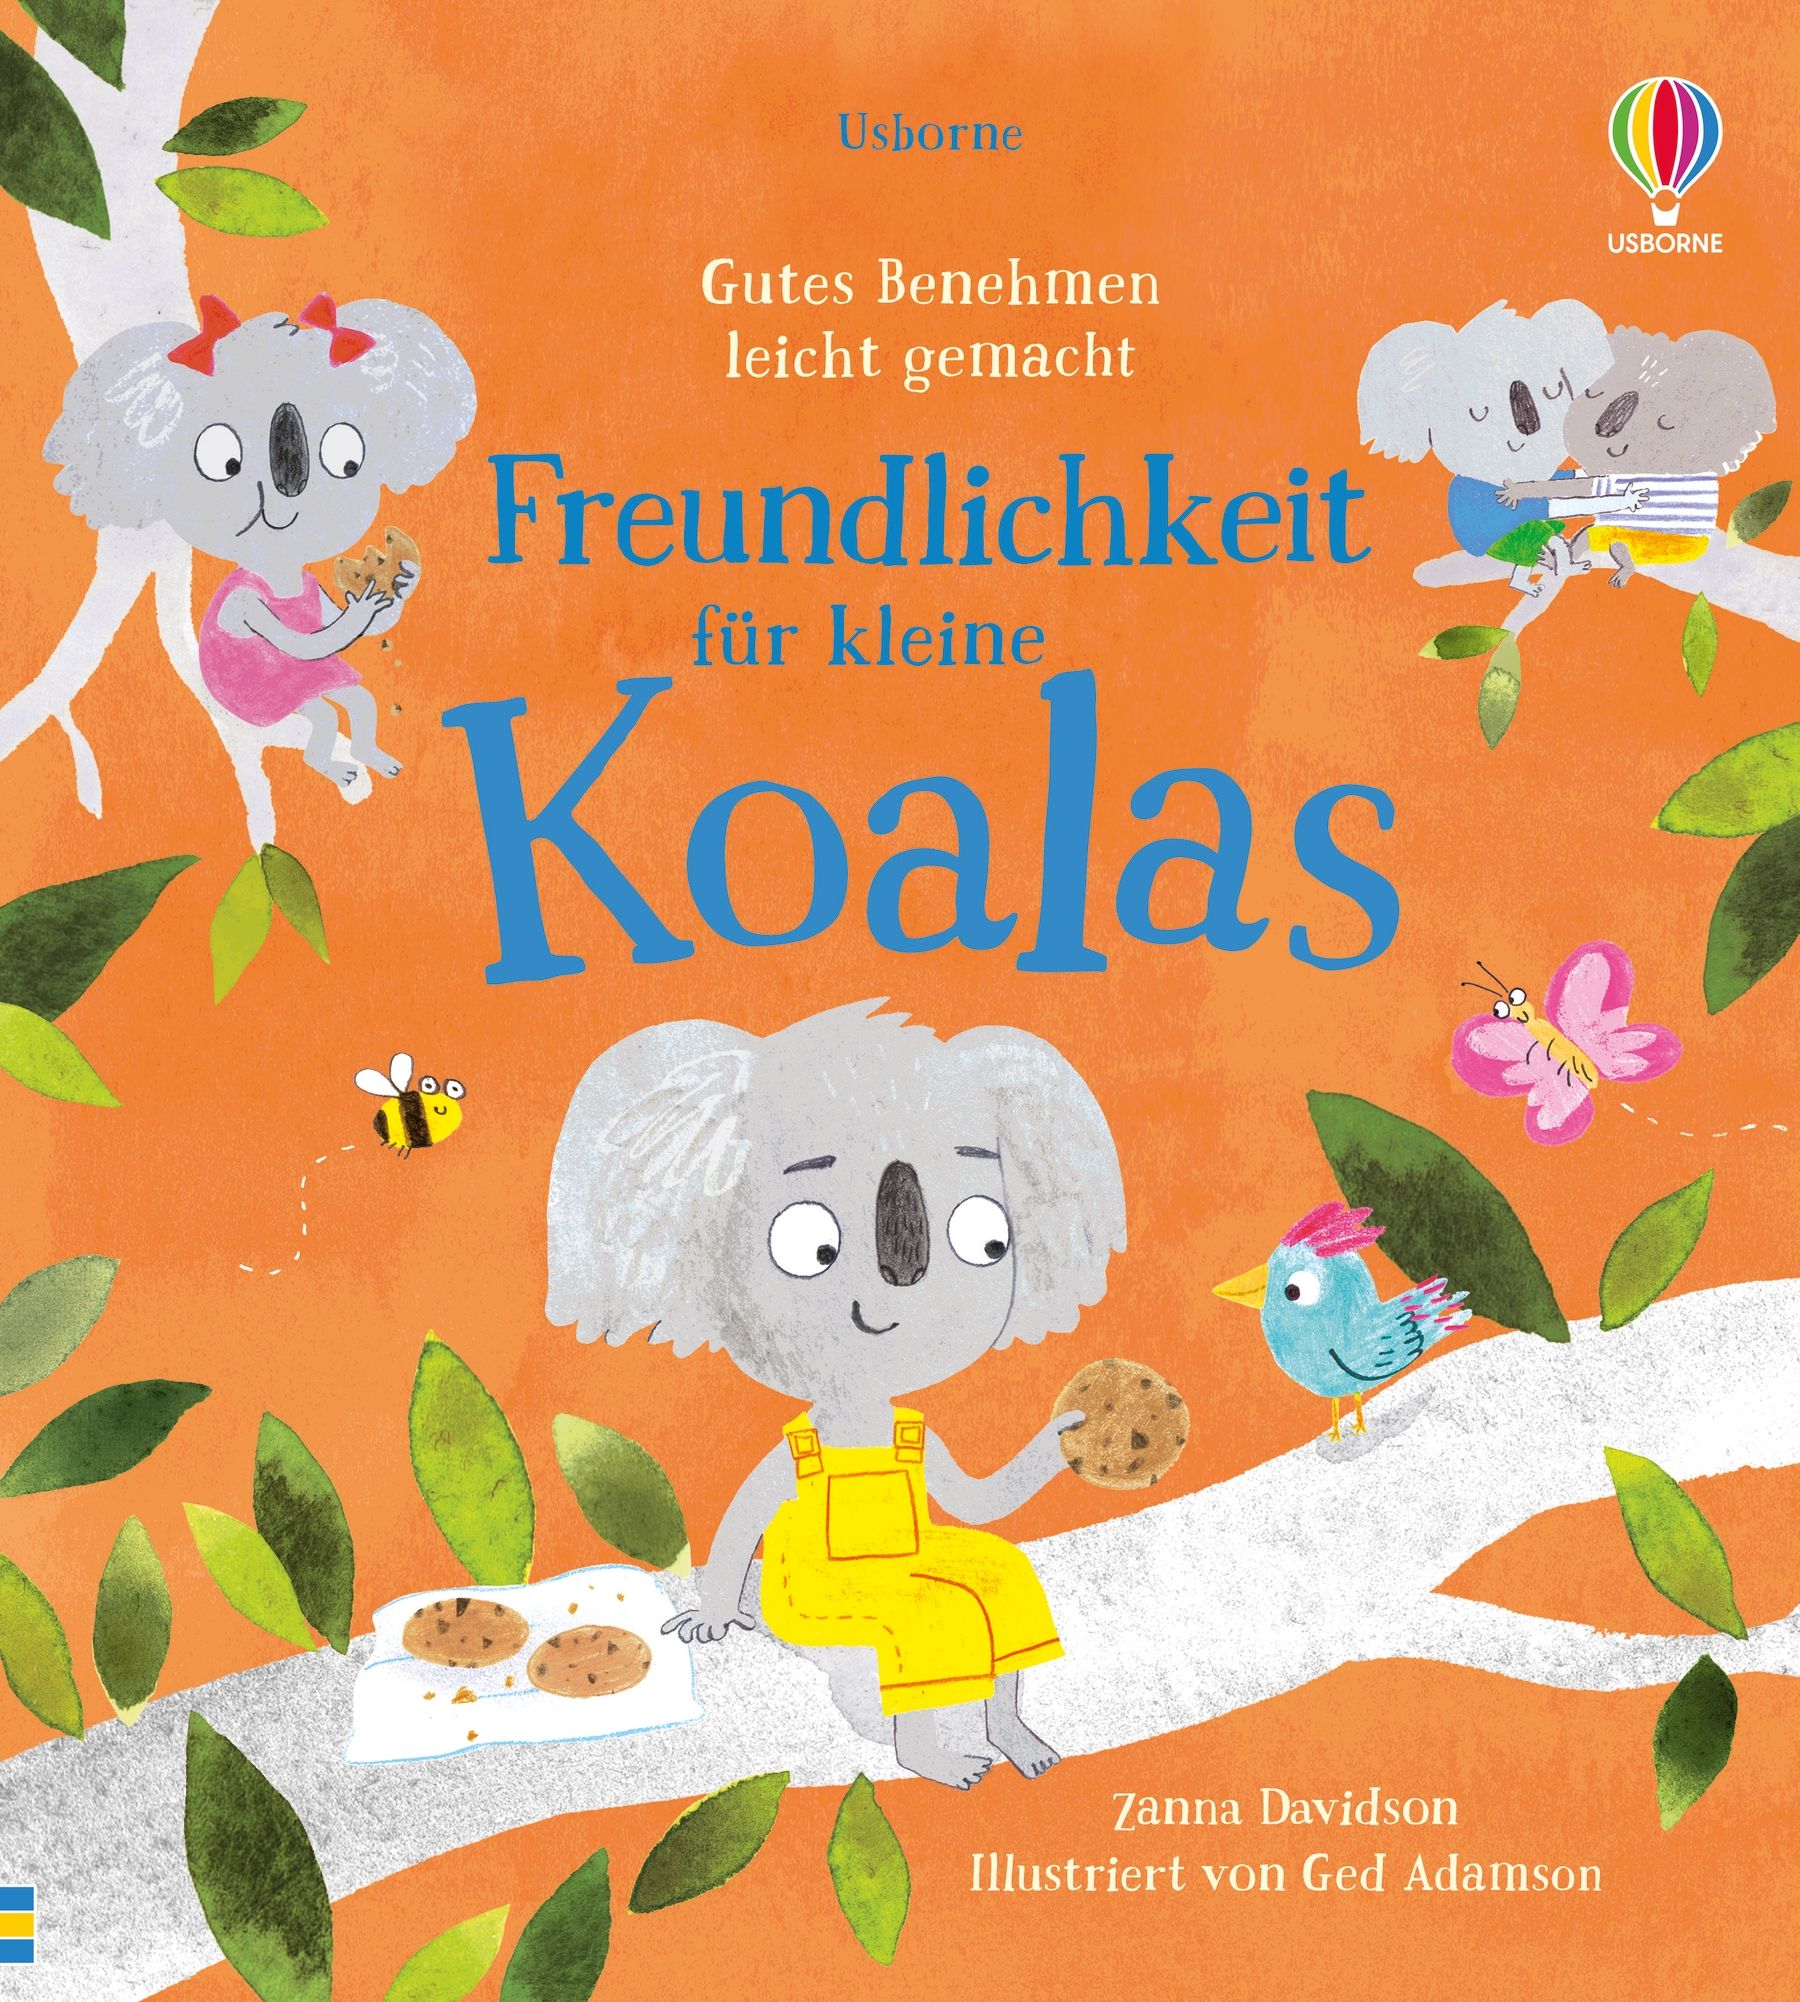 Buchcover "Freundlichkeit für kleine Koalas", Usborne 